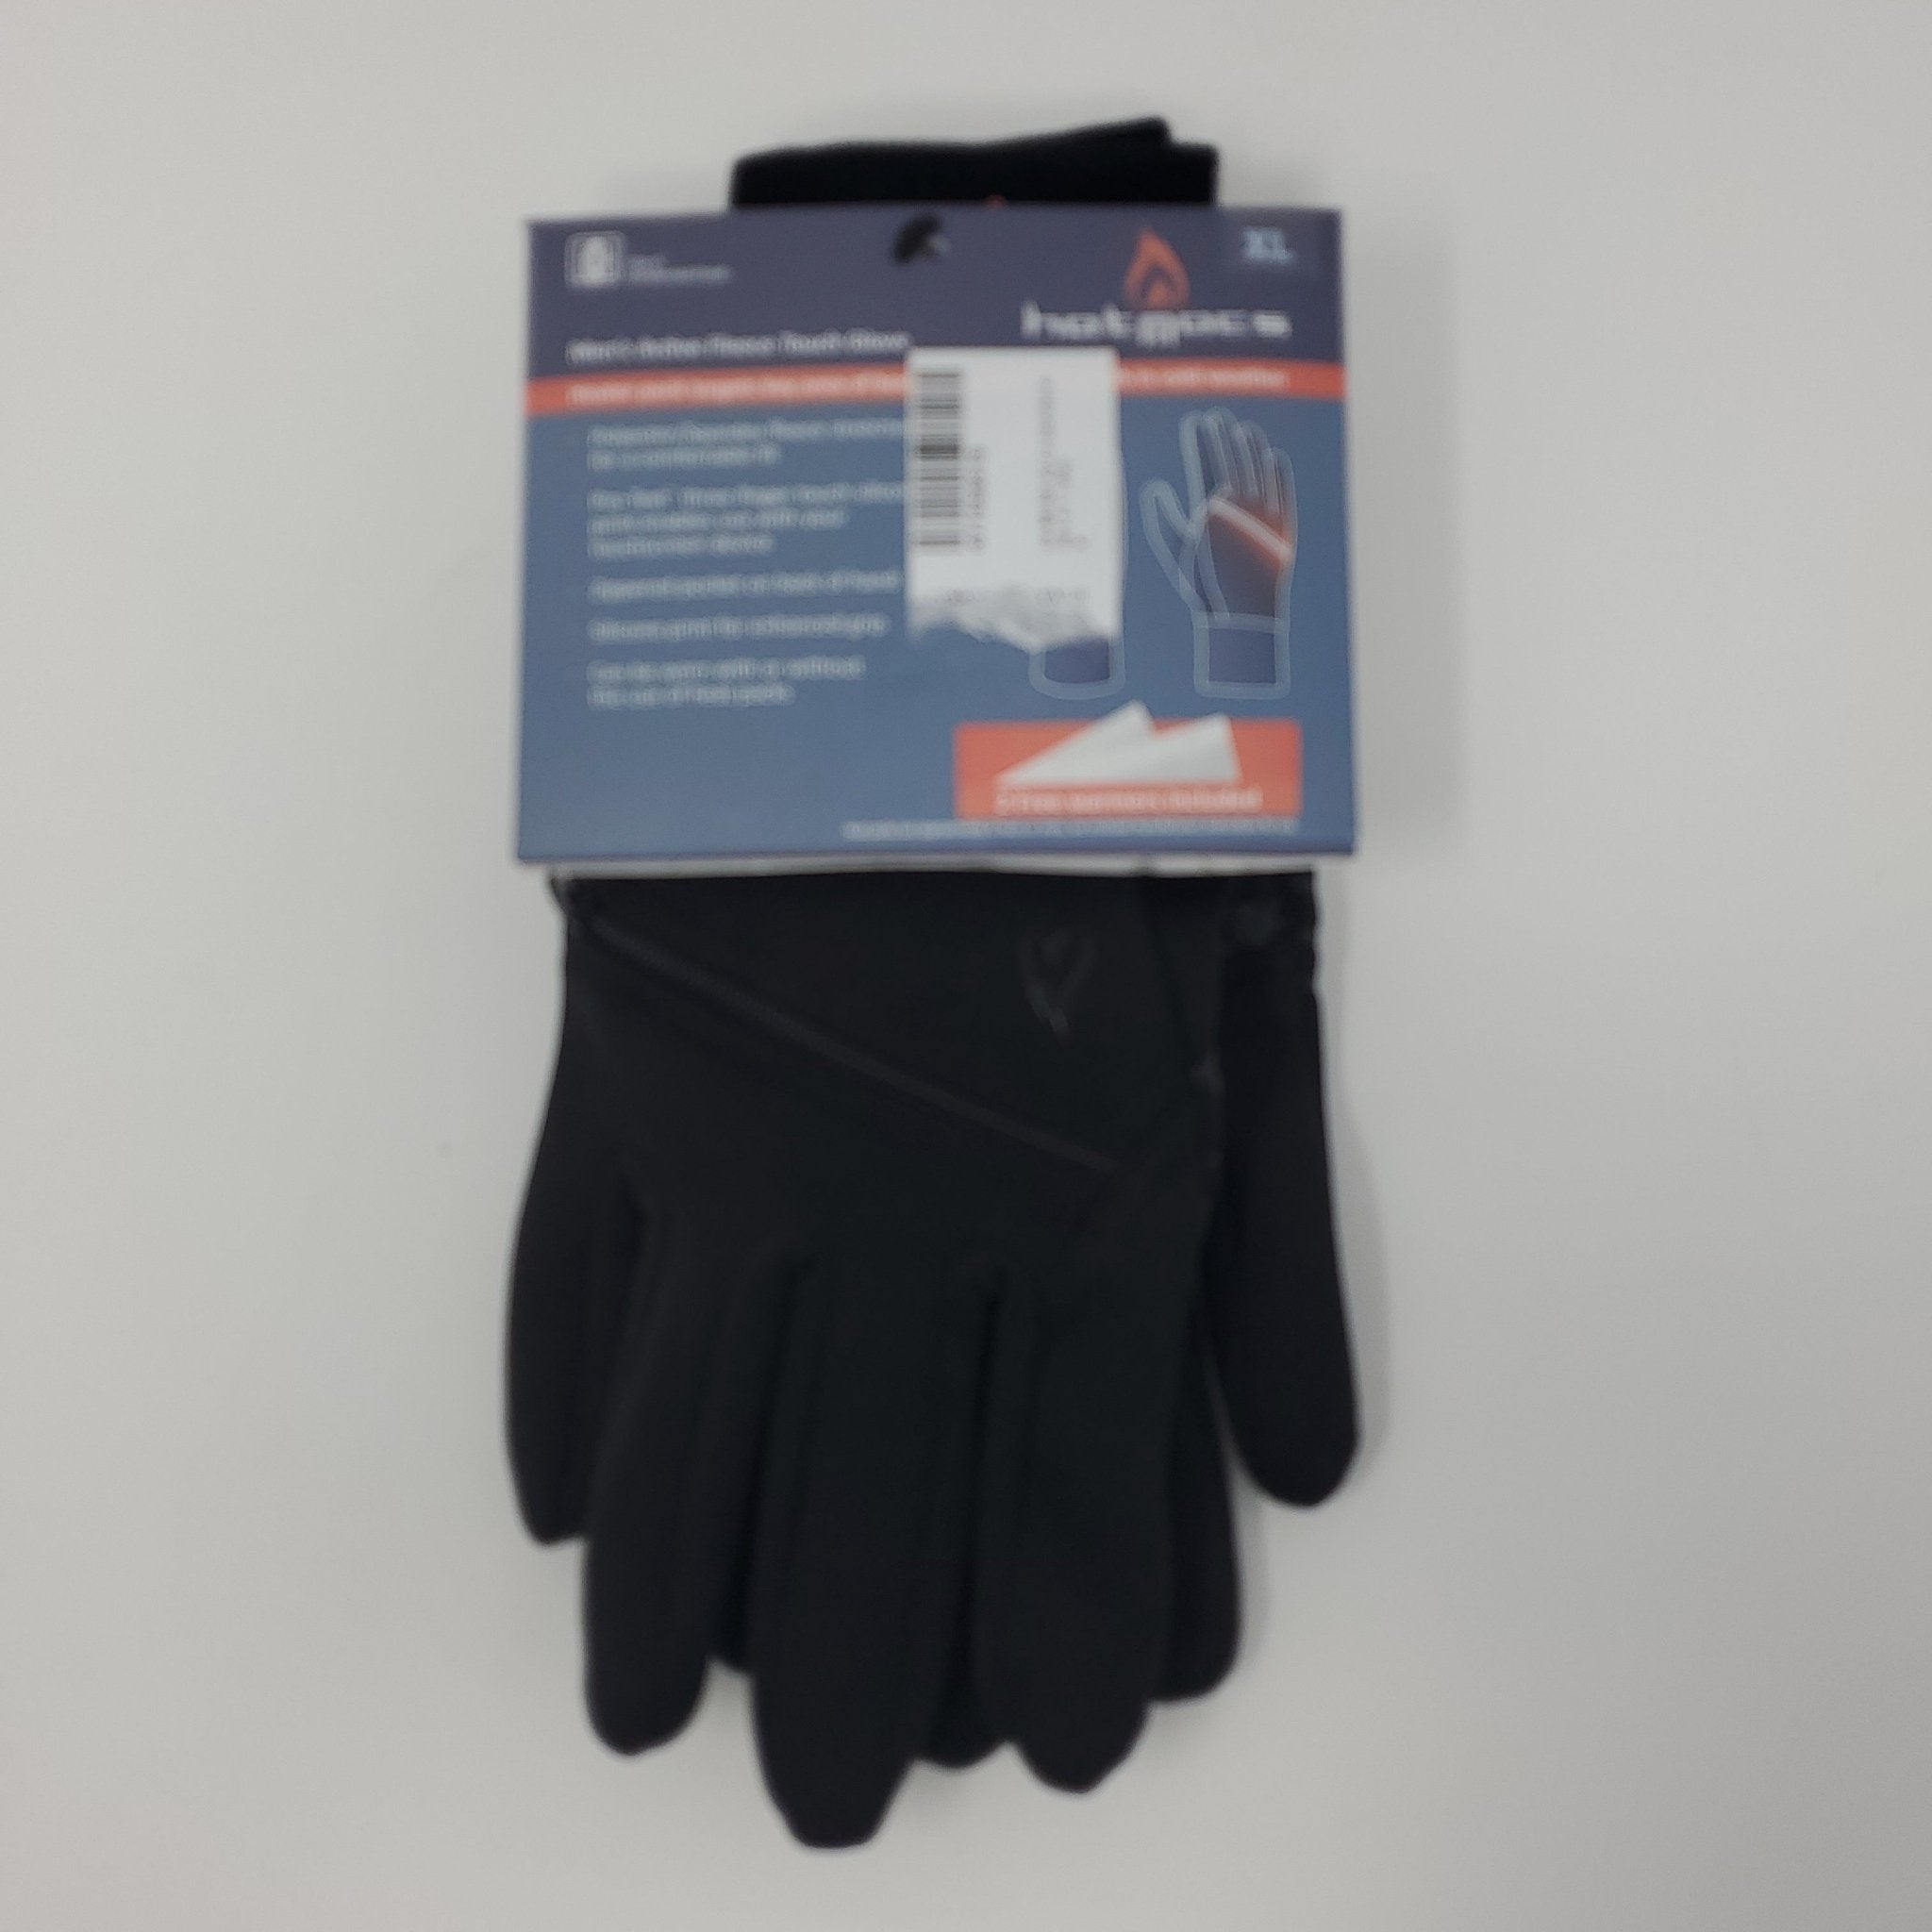 Hotmocs Mens Active Fleece Touch Glove - Bargainwizz